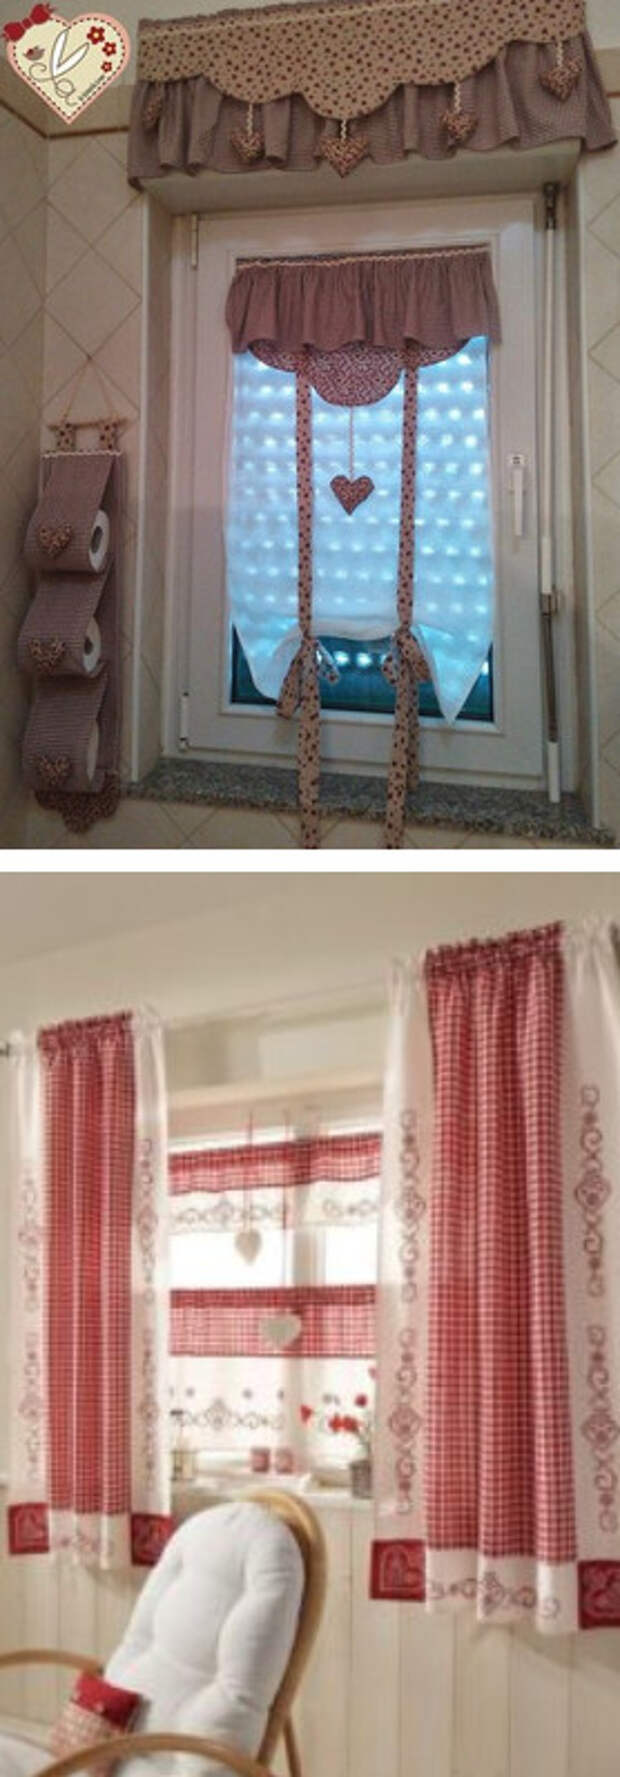 Текстильные декор для дома из остатков ткани. Нежно и уютно...